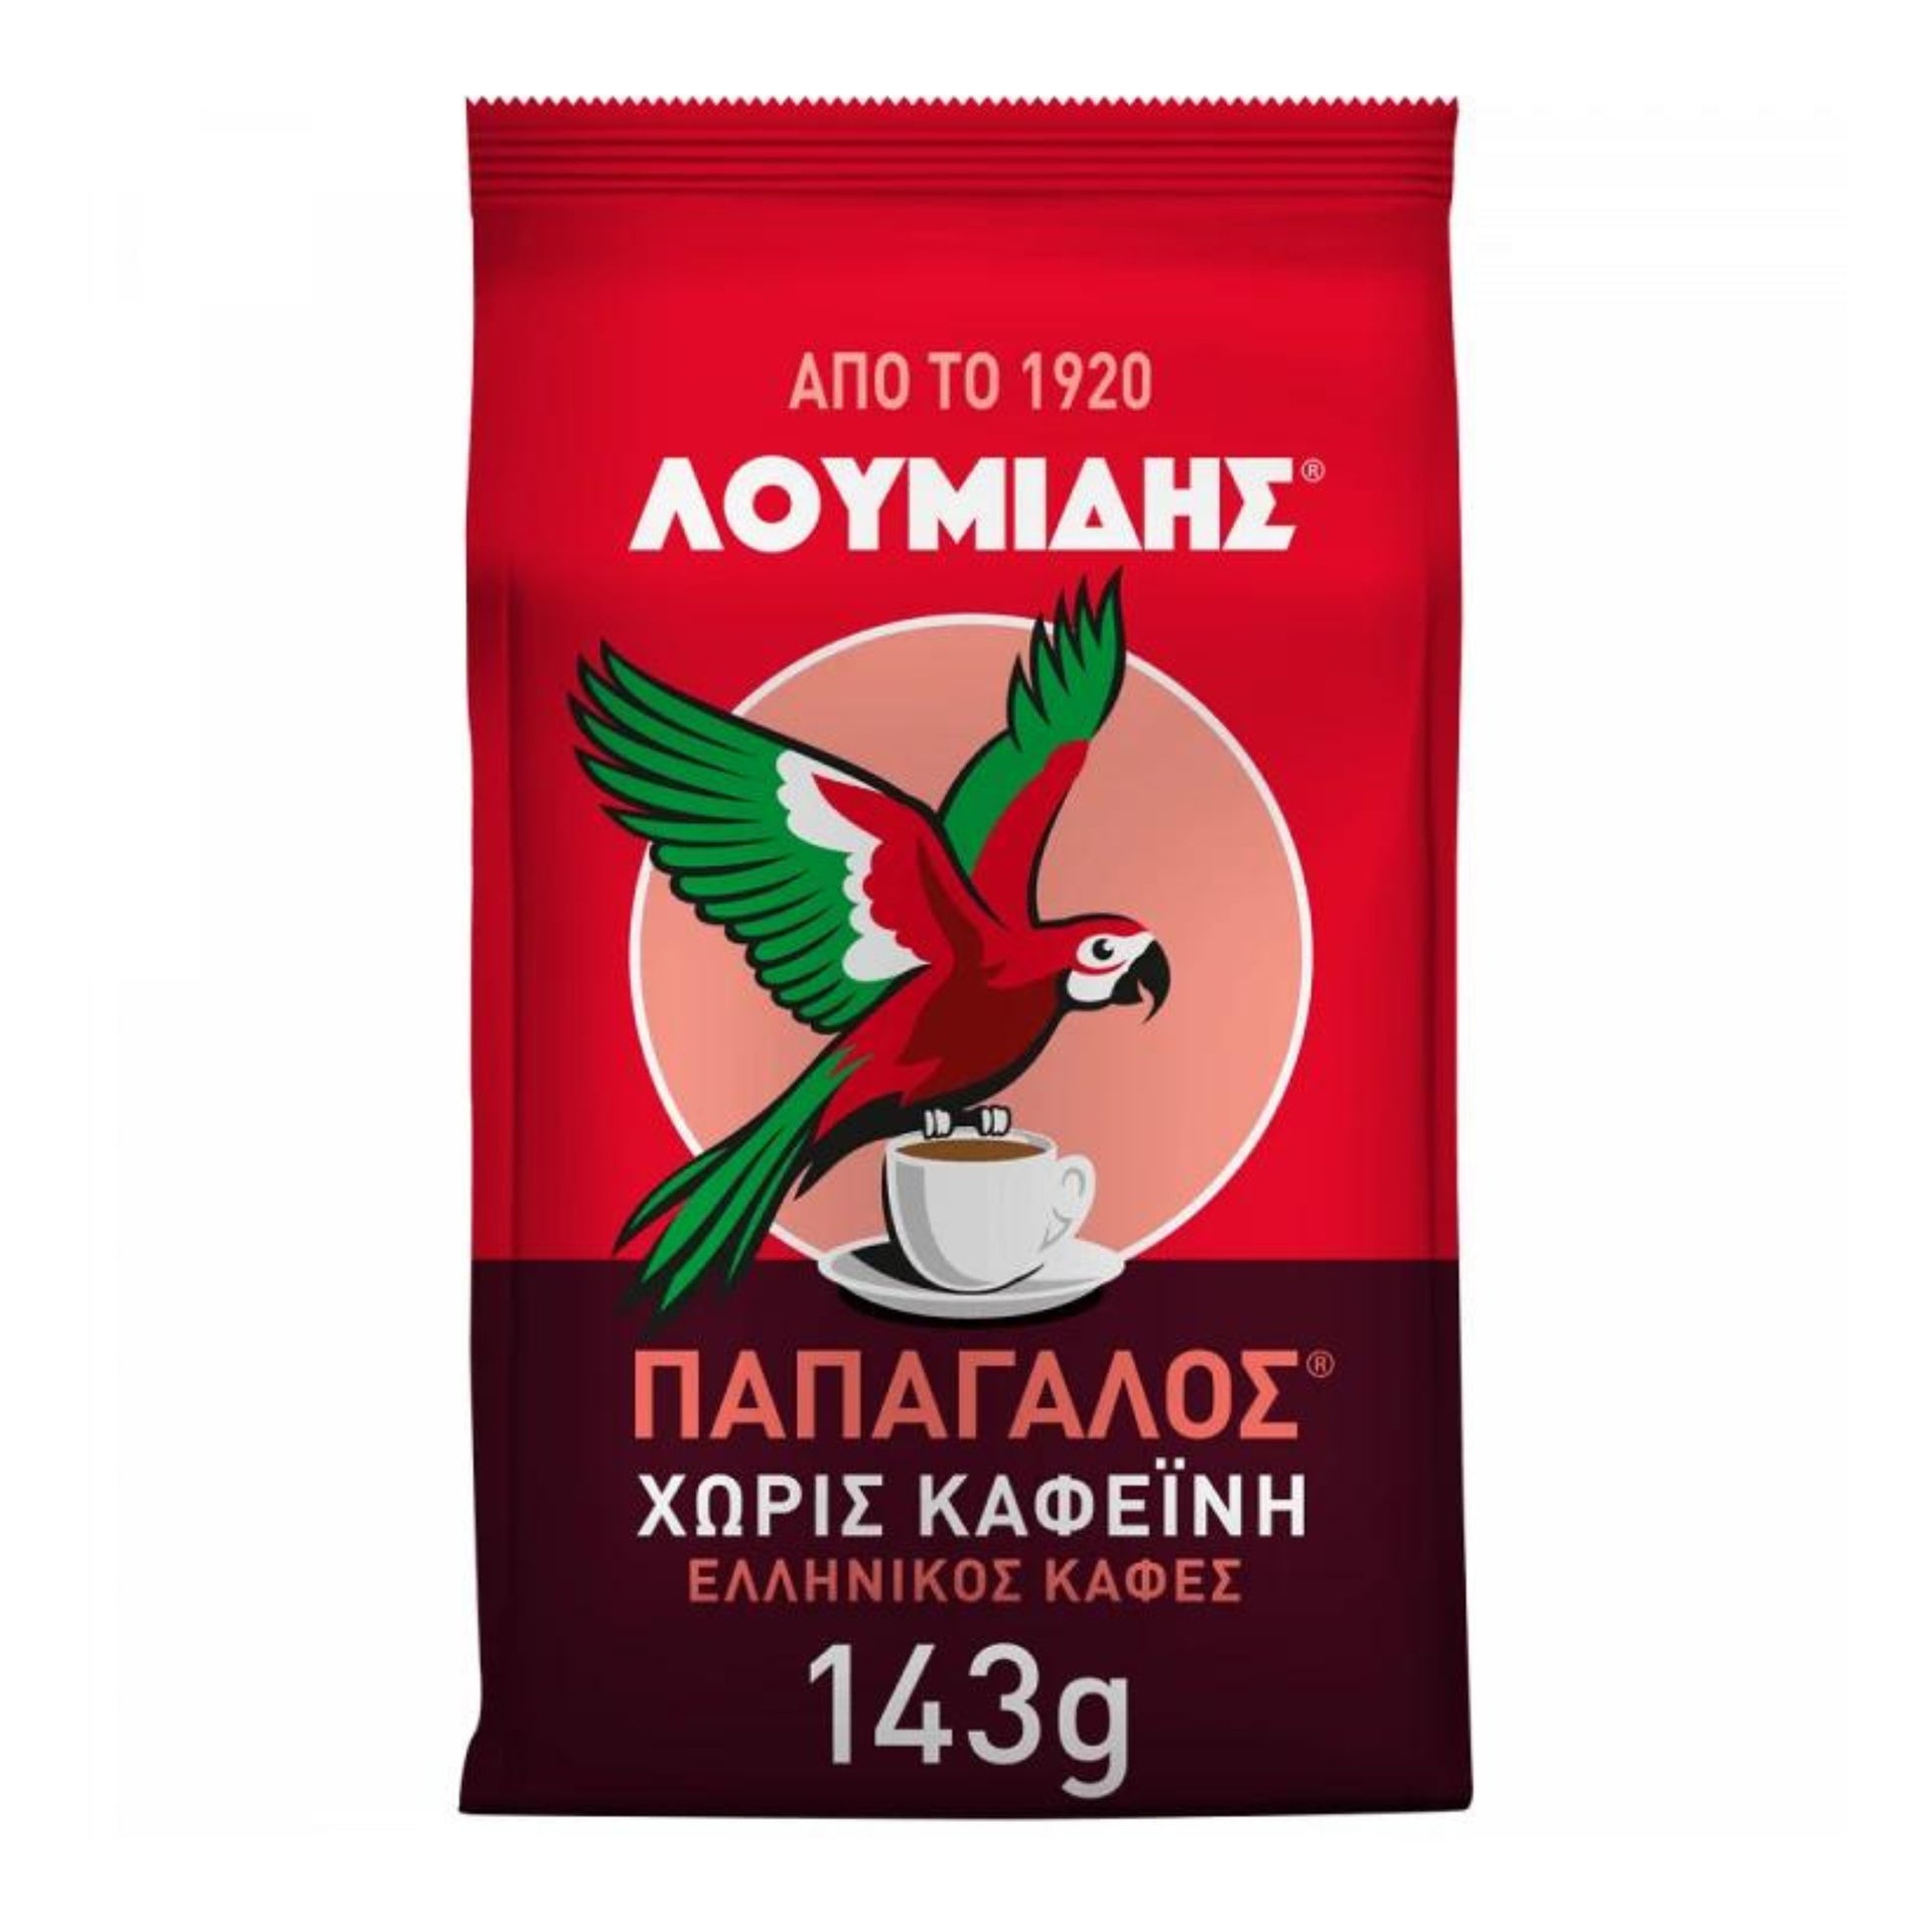 prodotti-greci-caffe-greco-decaf-143g-loumidis